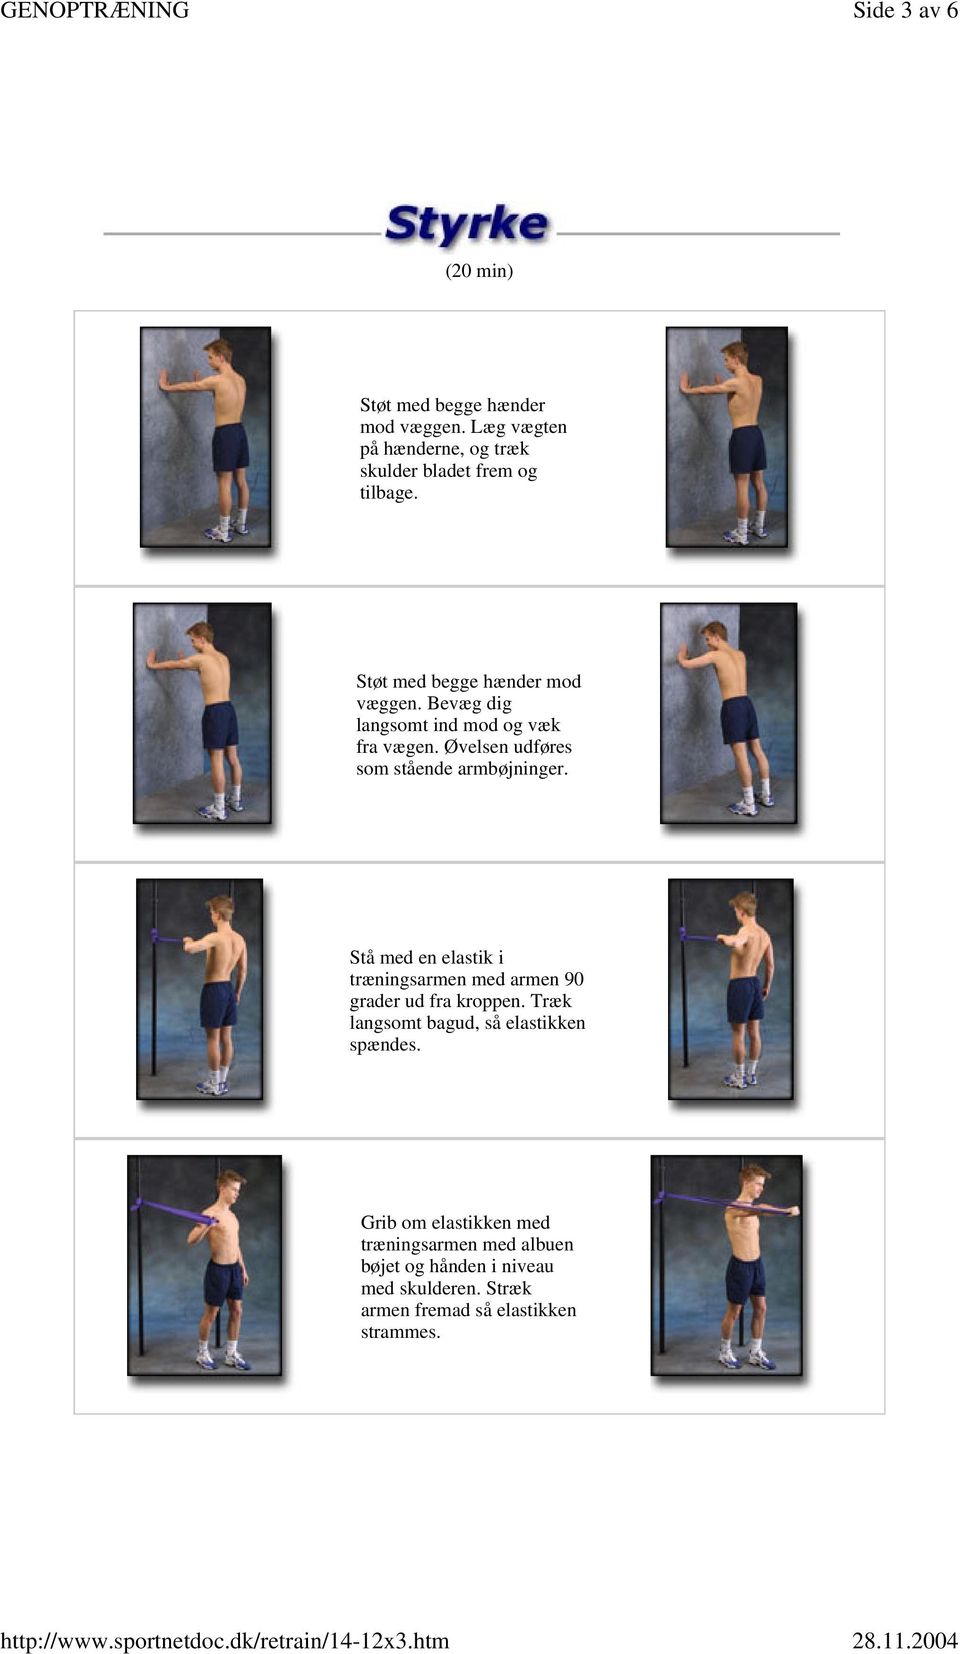 Stå med en elastik i træningsarmen med armen 90 grader ud fra kroppen. Træk langsomt bagud, så elastikken spændes.